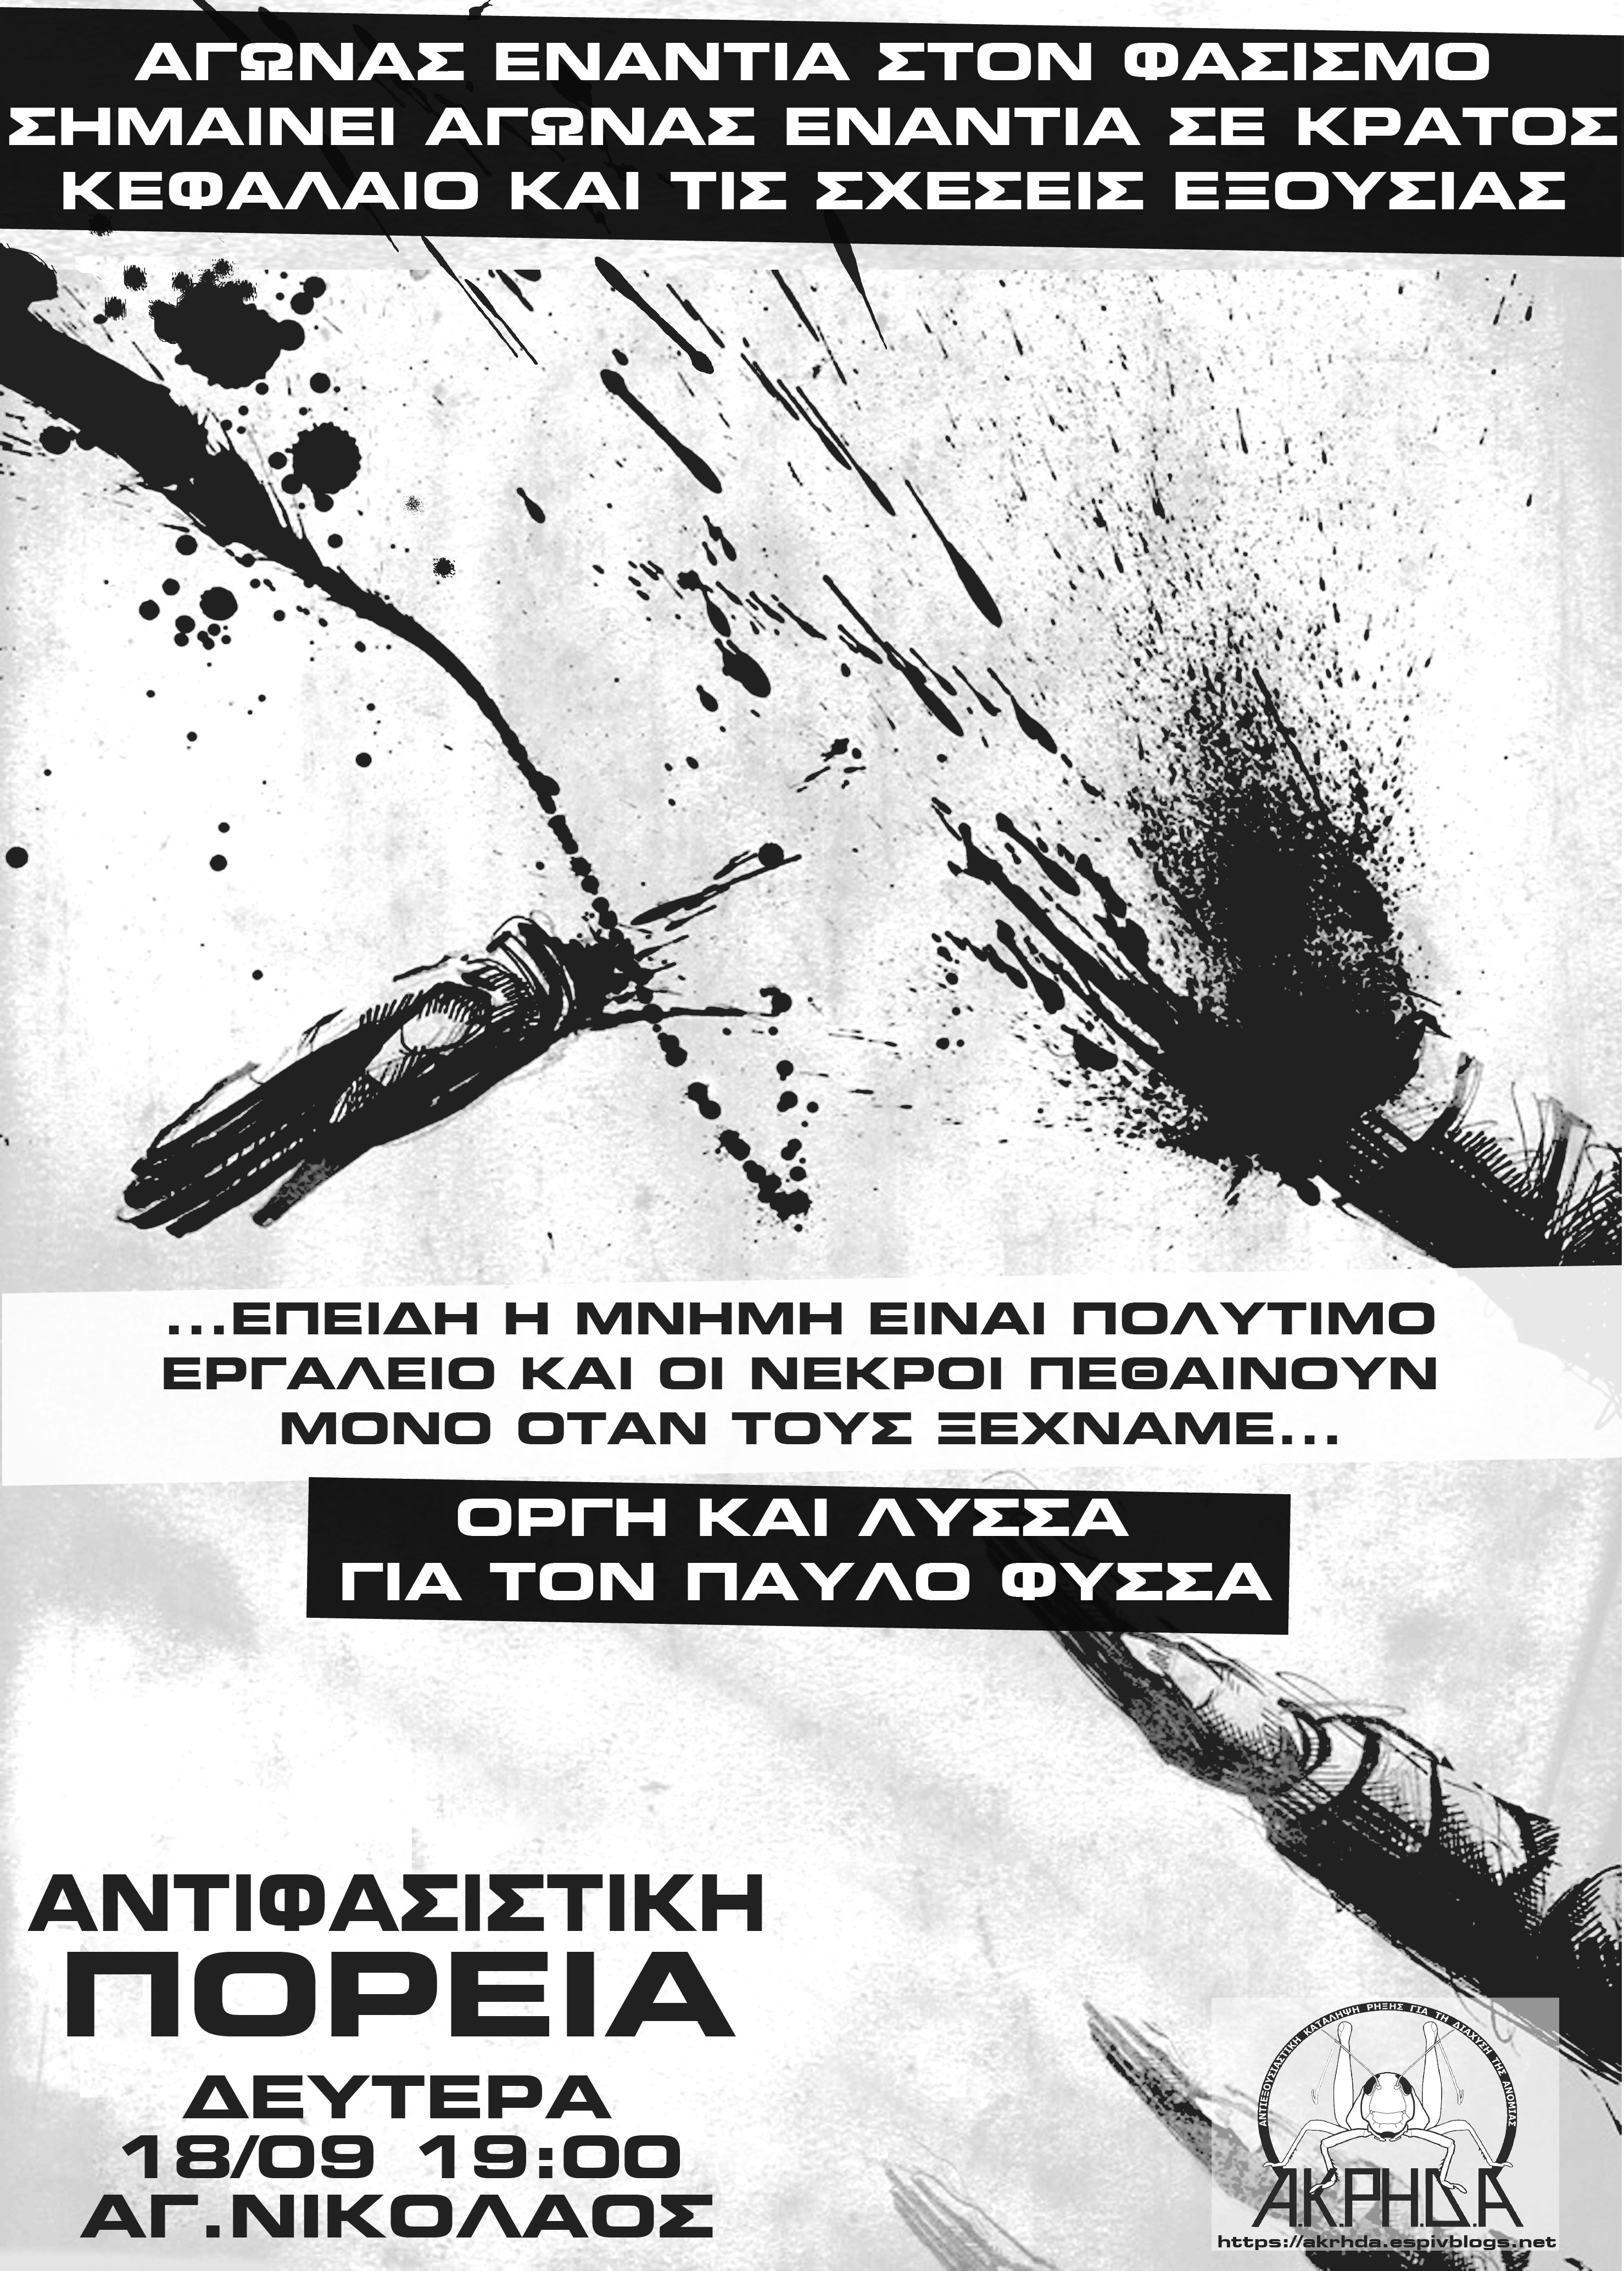 Αφίσα για αντιφασιστική πορεία για τον Παυλο Φύσσα - ΑΚΡΗΔΑ